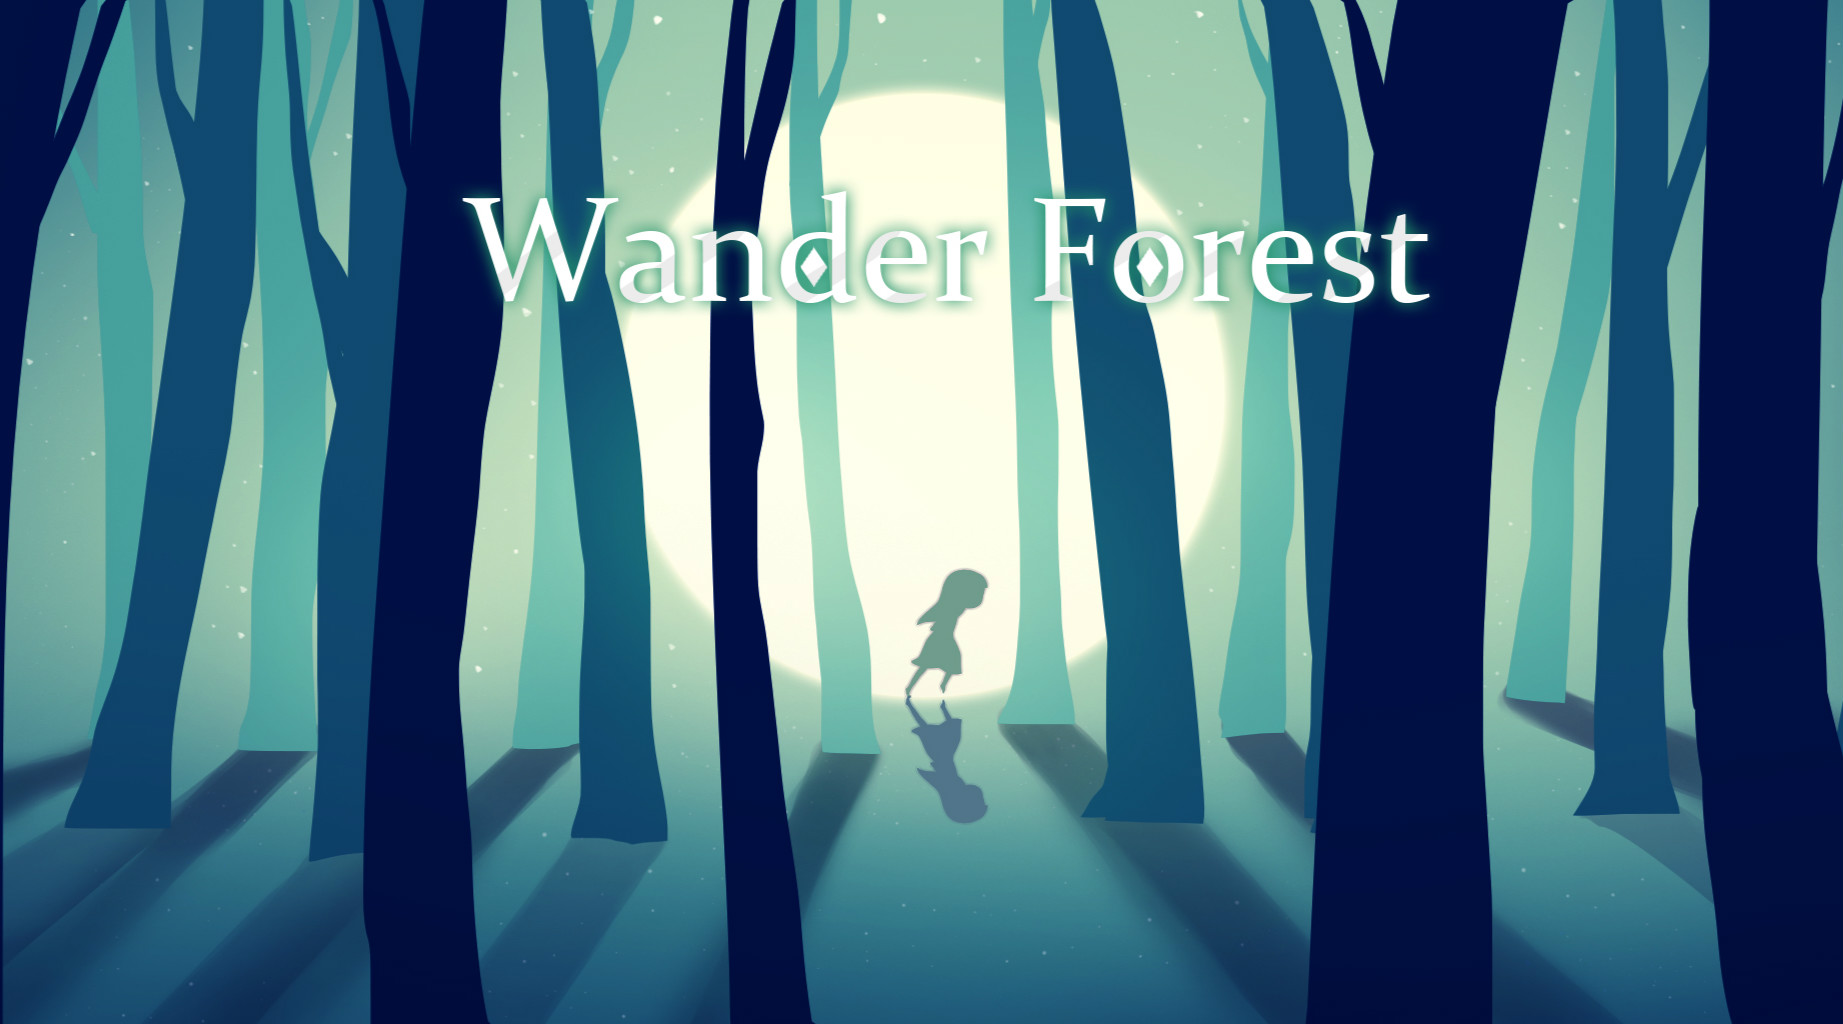 Wonder Forest